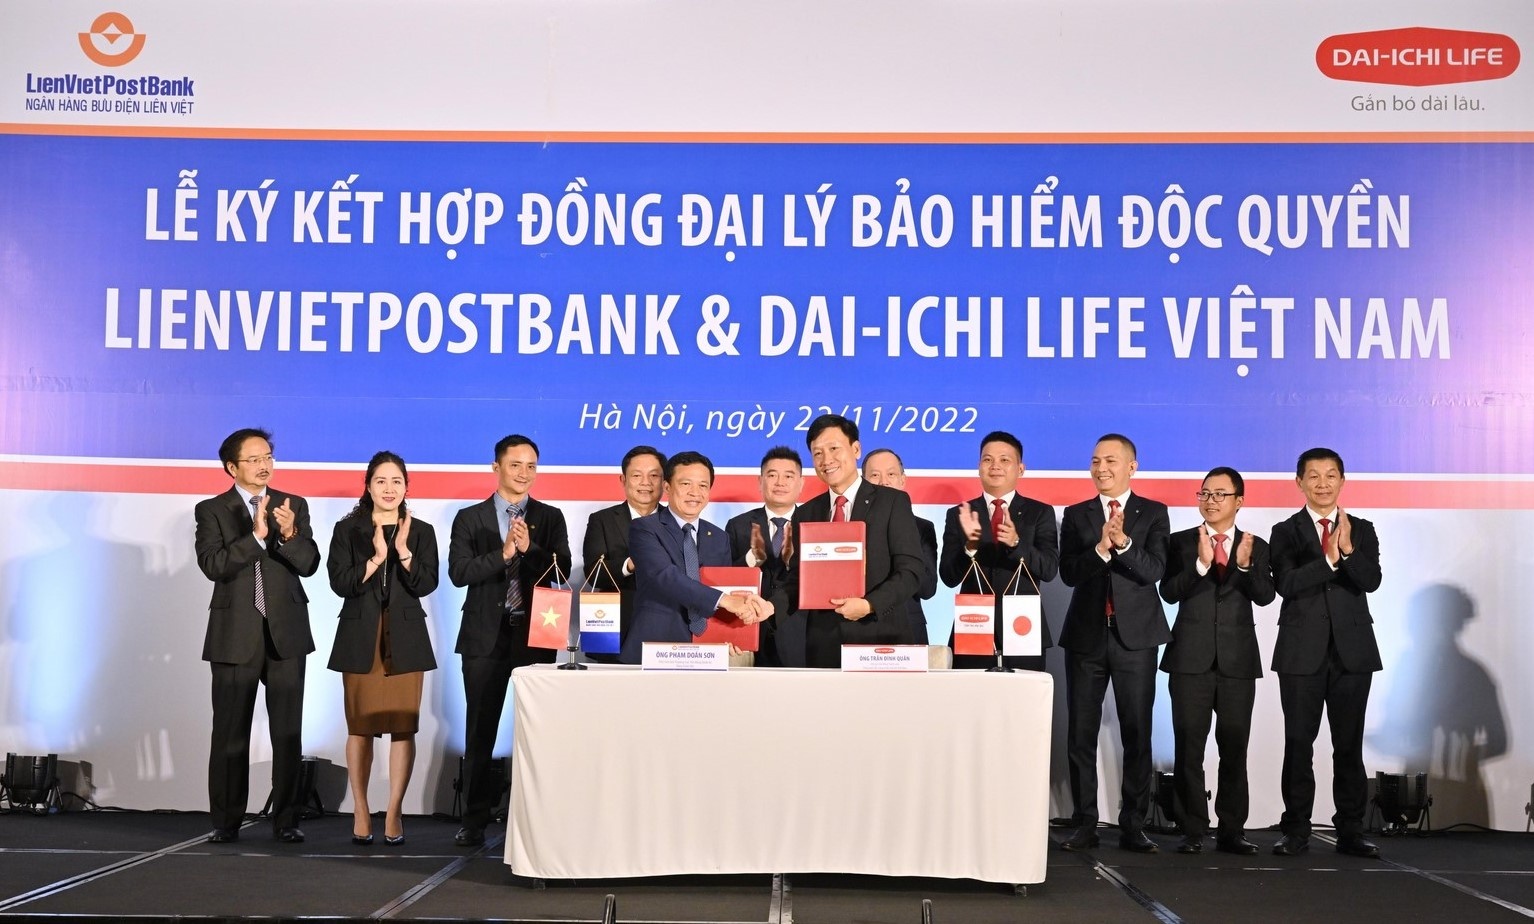 LienVietPostBank và Dai-ichi Life Việt Nam ký kết hợp đồng độc quyền kinh doanh bảo hiểm liên kết